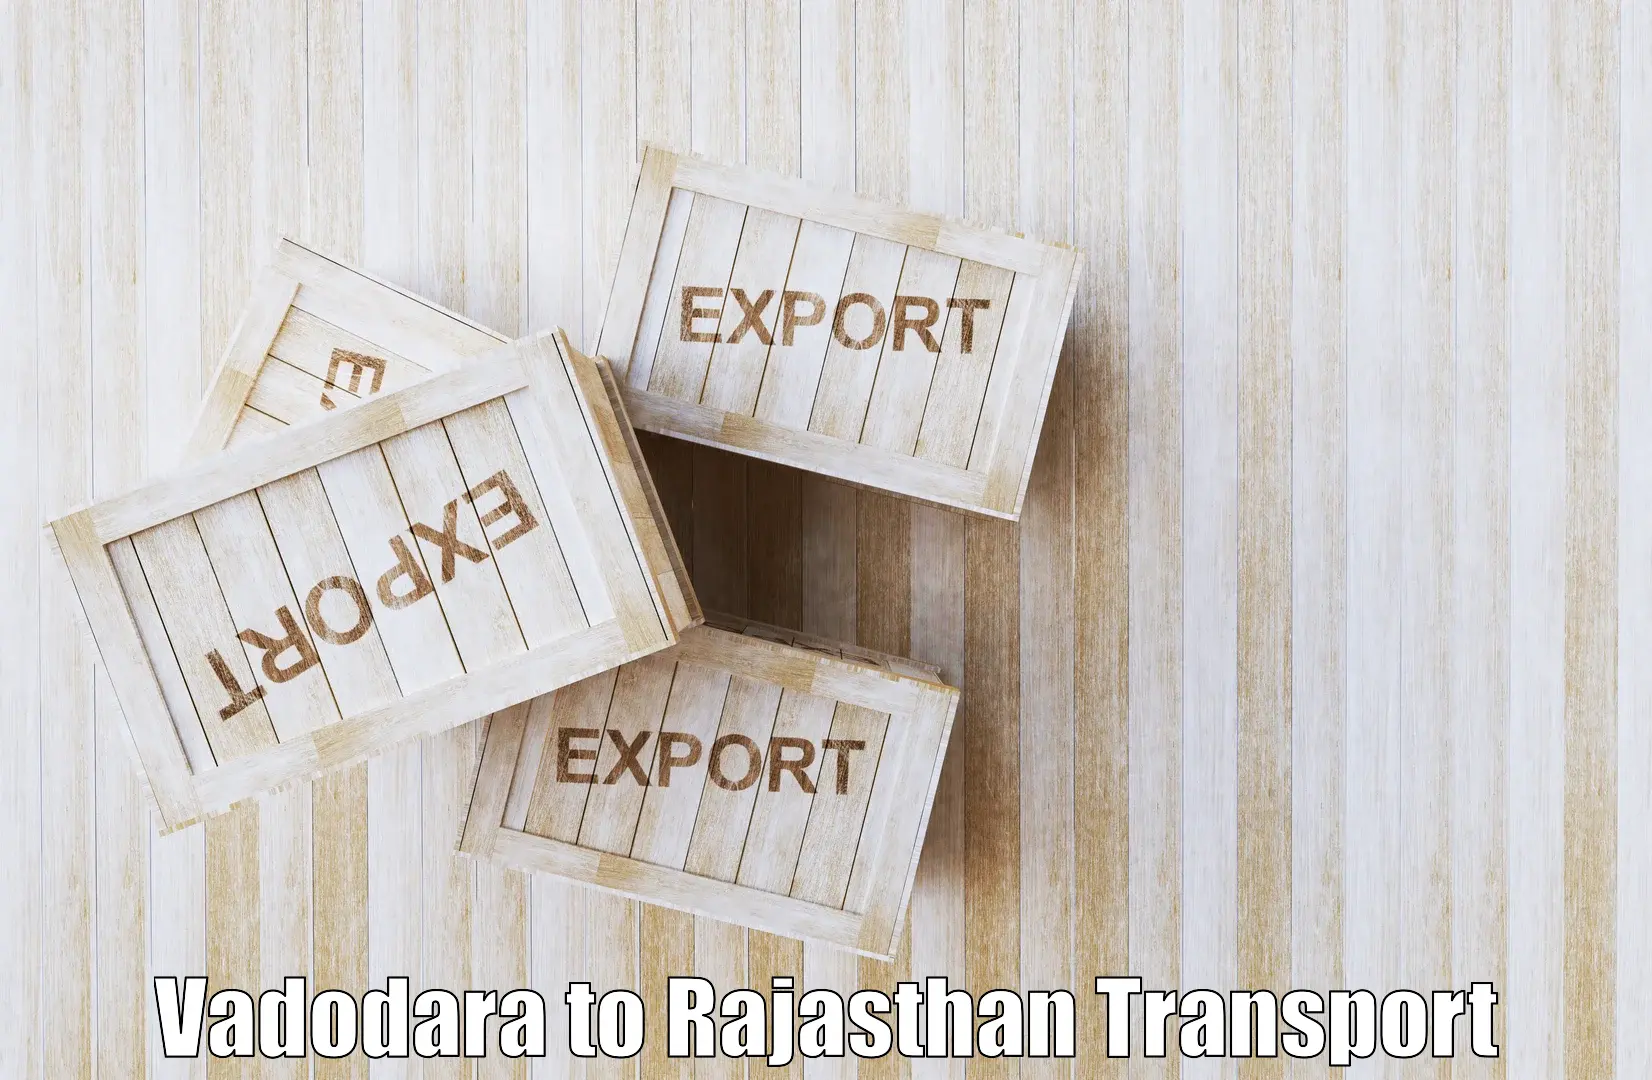 Intercity transport Vadodara to NIT Jaipur